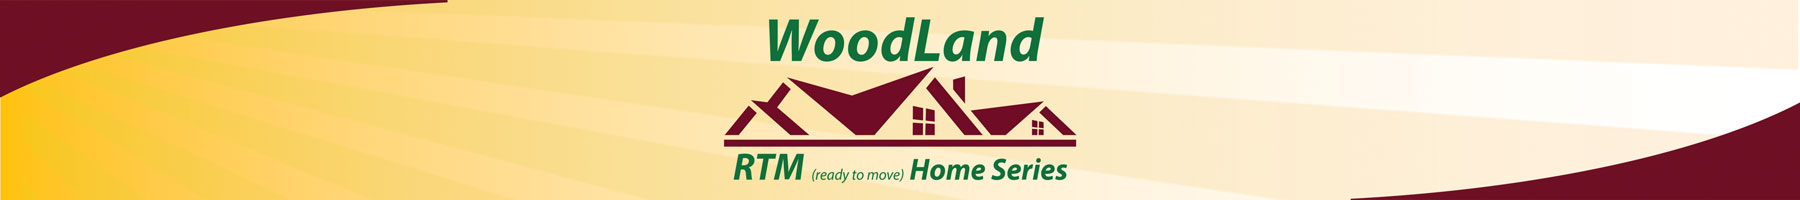 woodland_rtm_homes